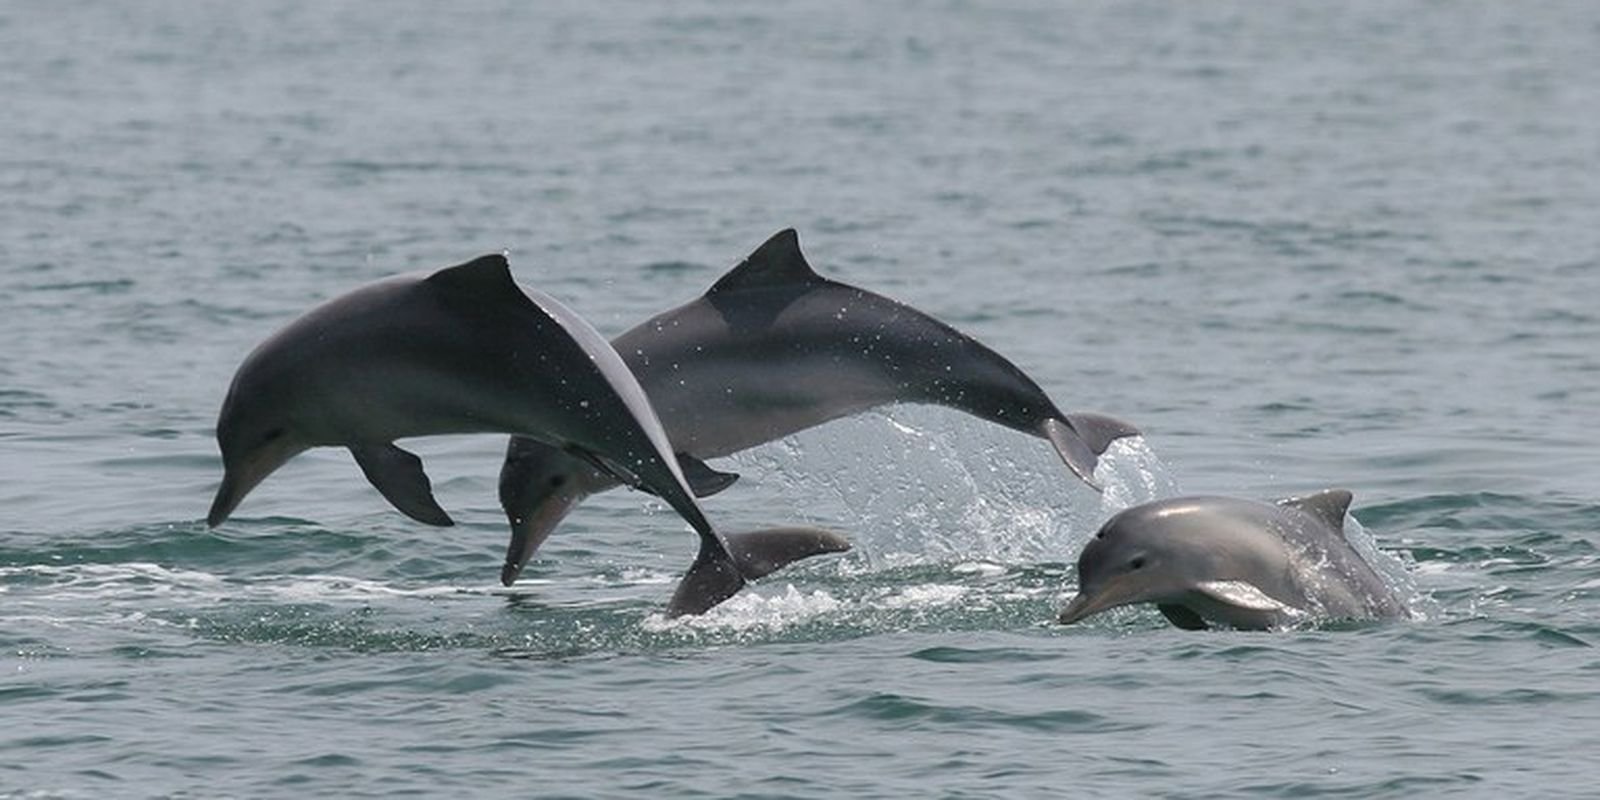 Estudo detecta bactéria da leptospirose em golfinhos e lobos-marinhos